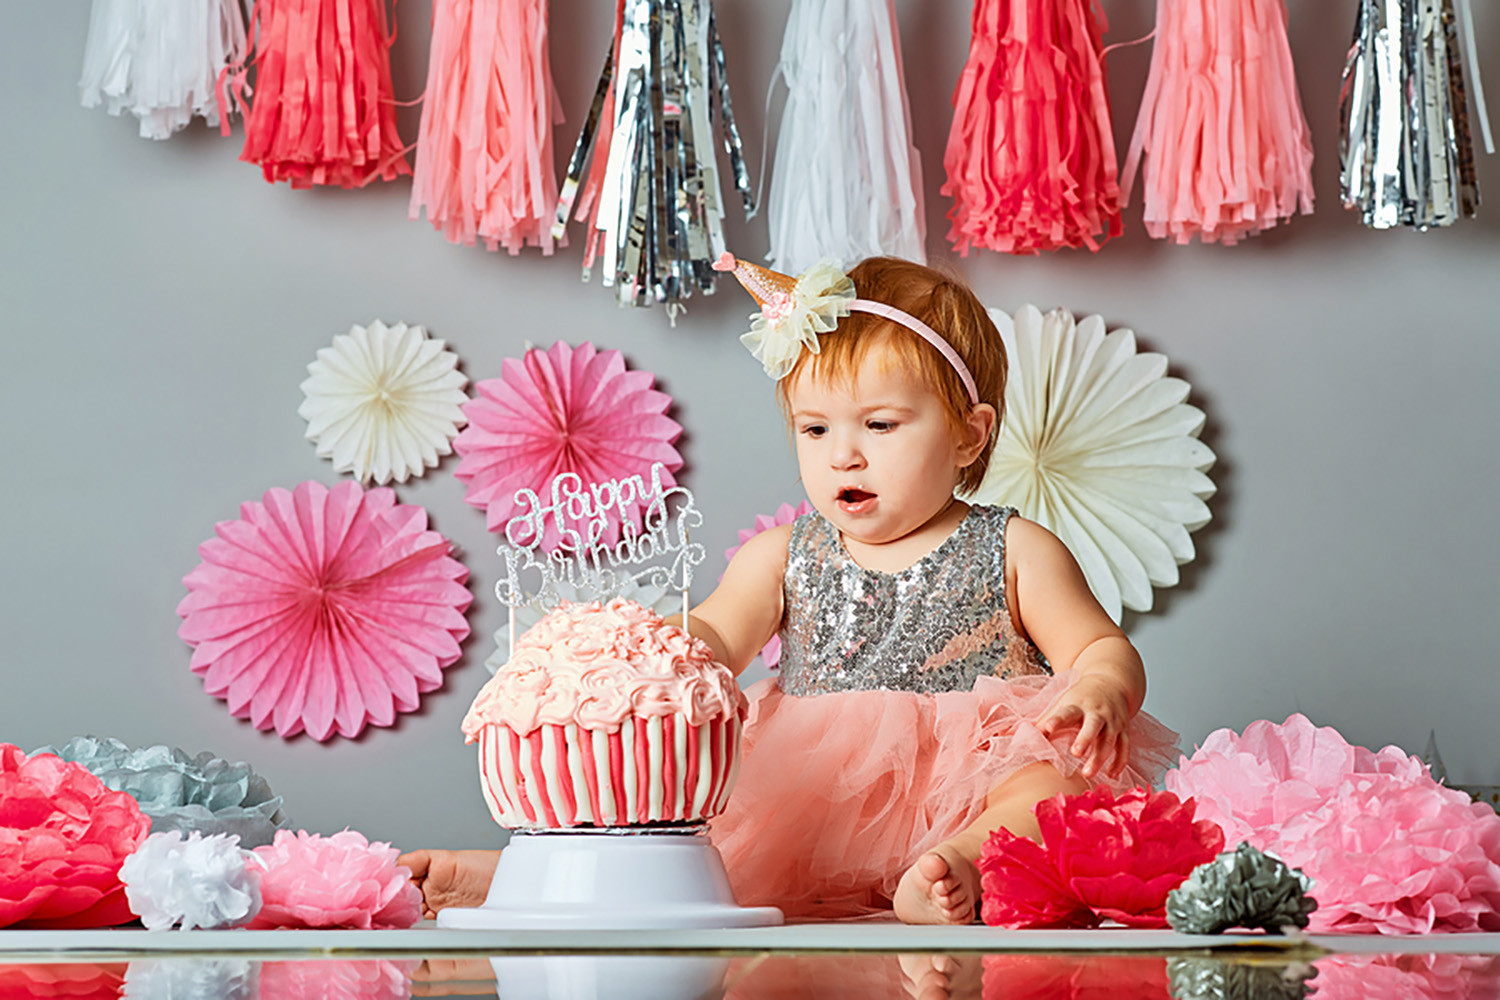 Birthday Gift Ideas For Toddler Girl
 Baby s 1st Birthday Gifts & Party Ideas for Boys & Girls